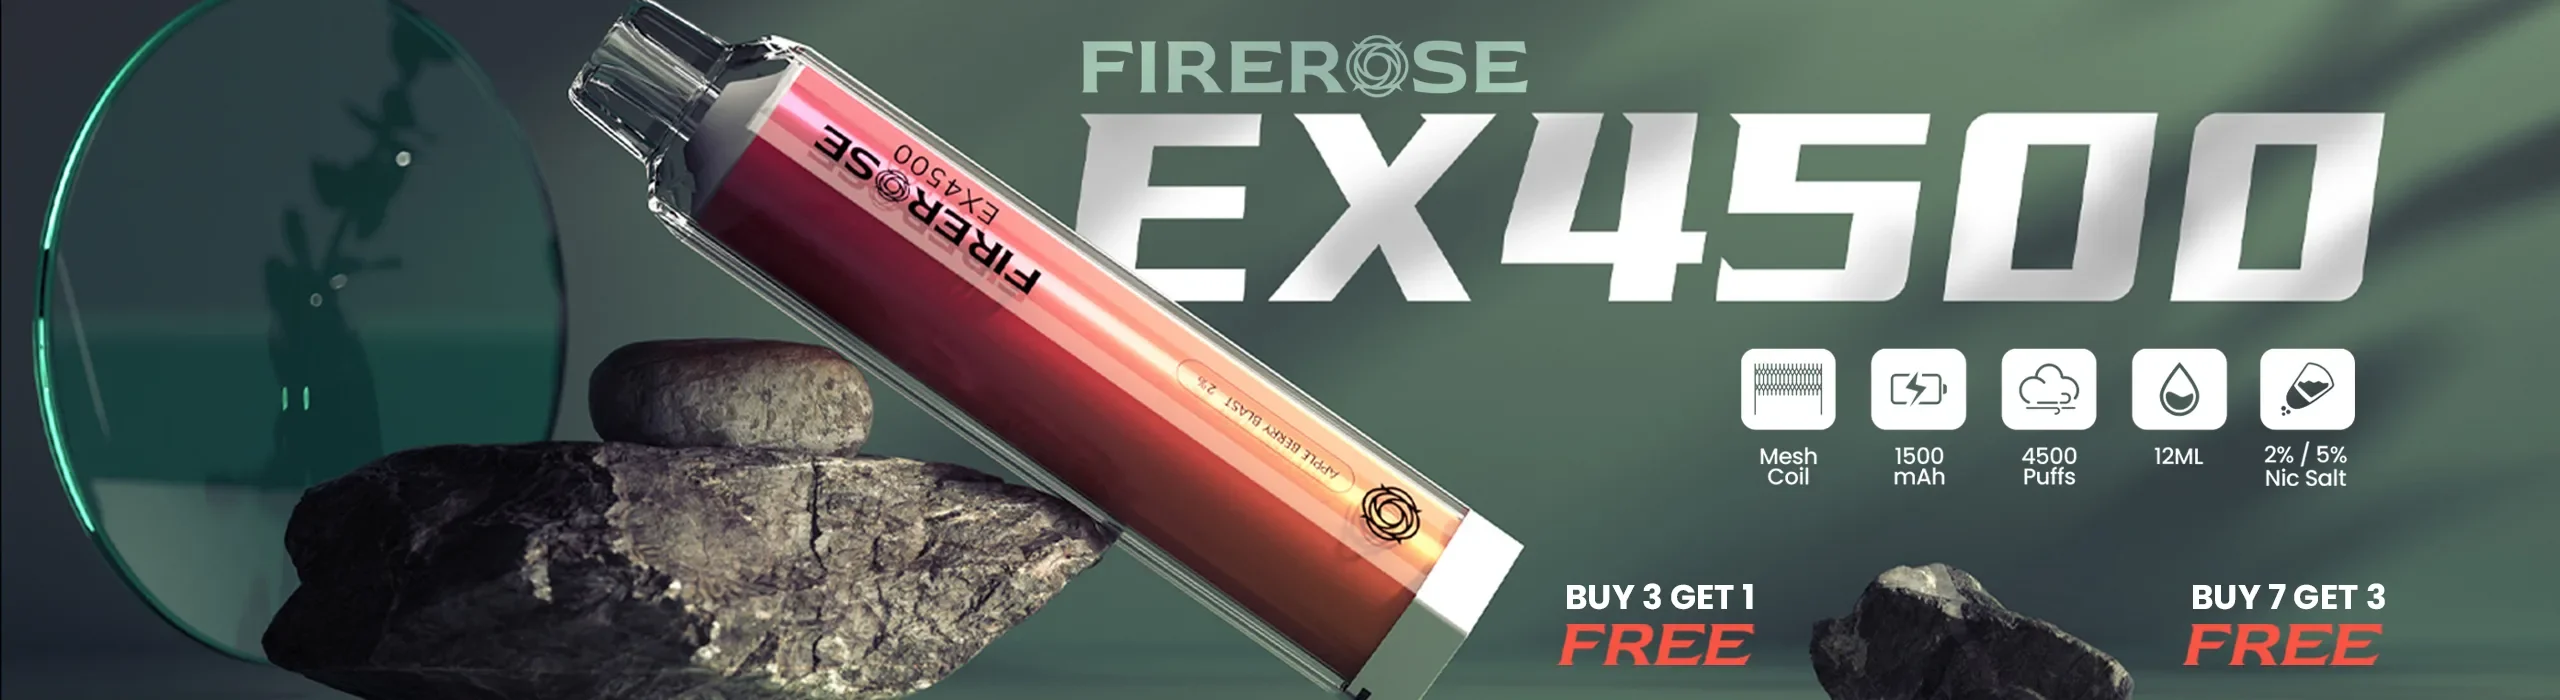 Firerose Ex4500 Banner